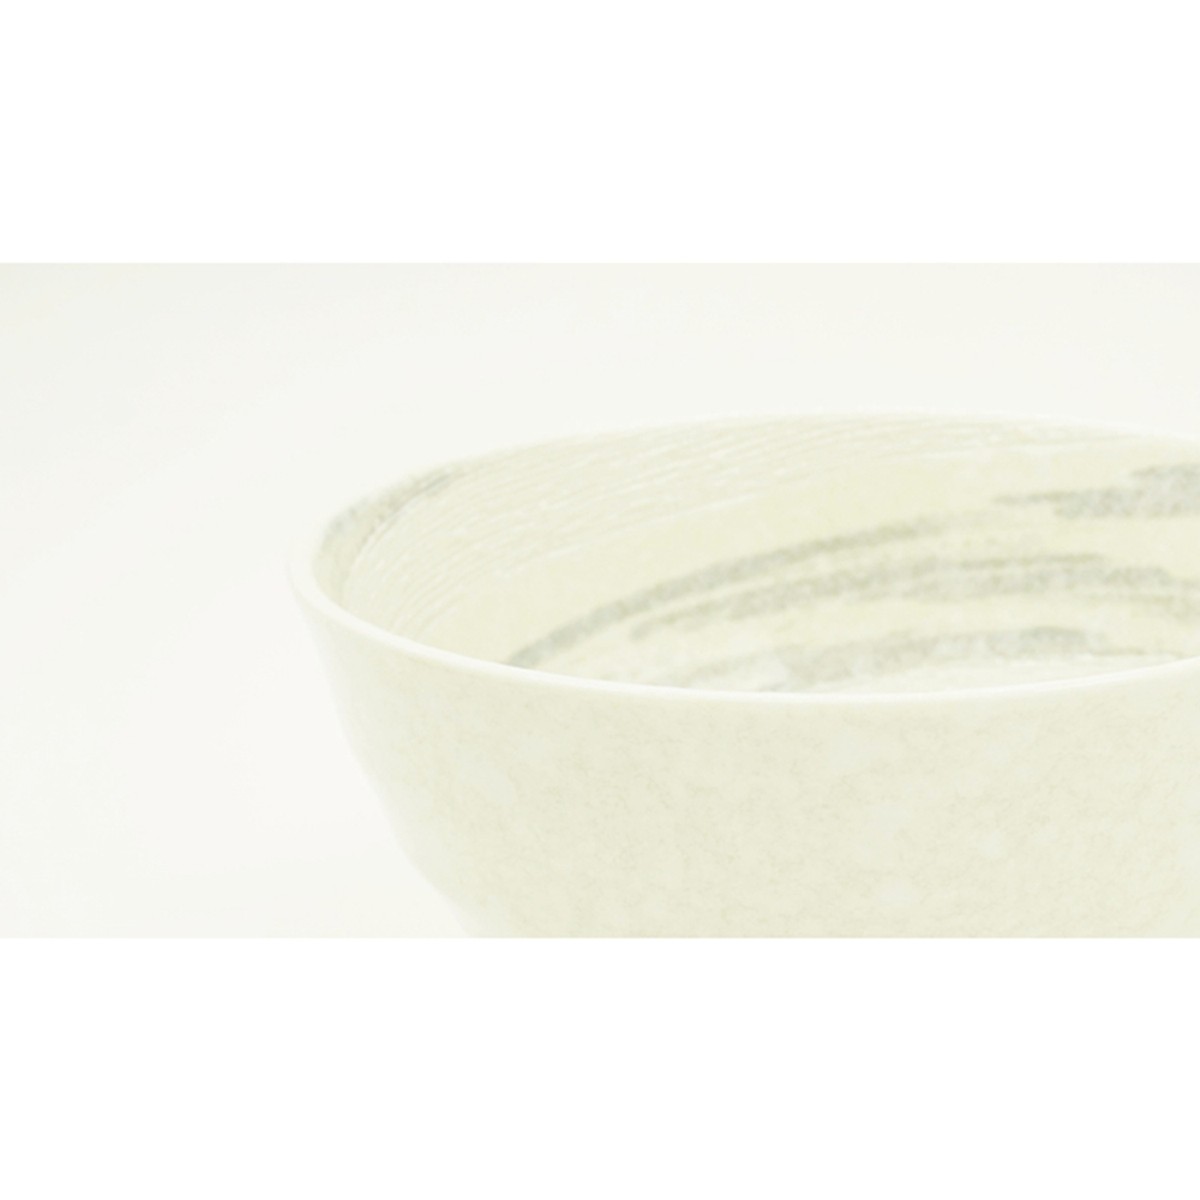 Bát tô sứ Ceramic Ramen màu trắng - Nội địa Nhật Bản